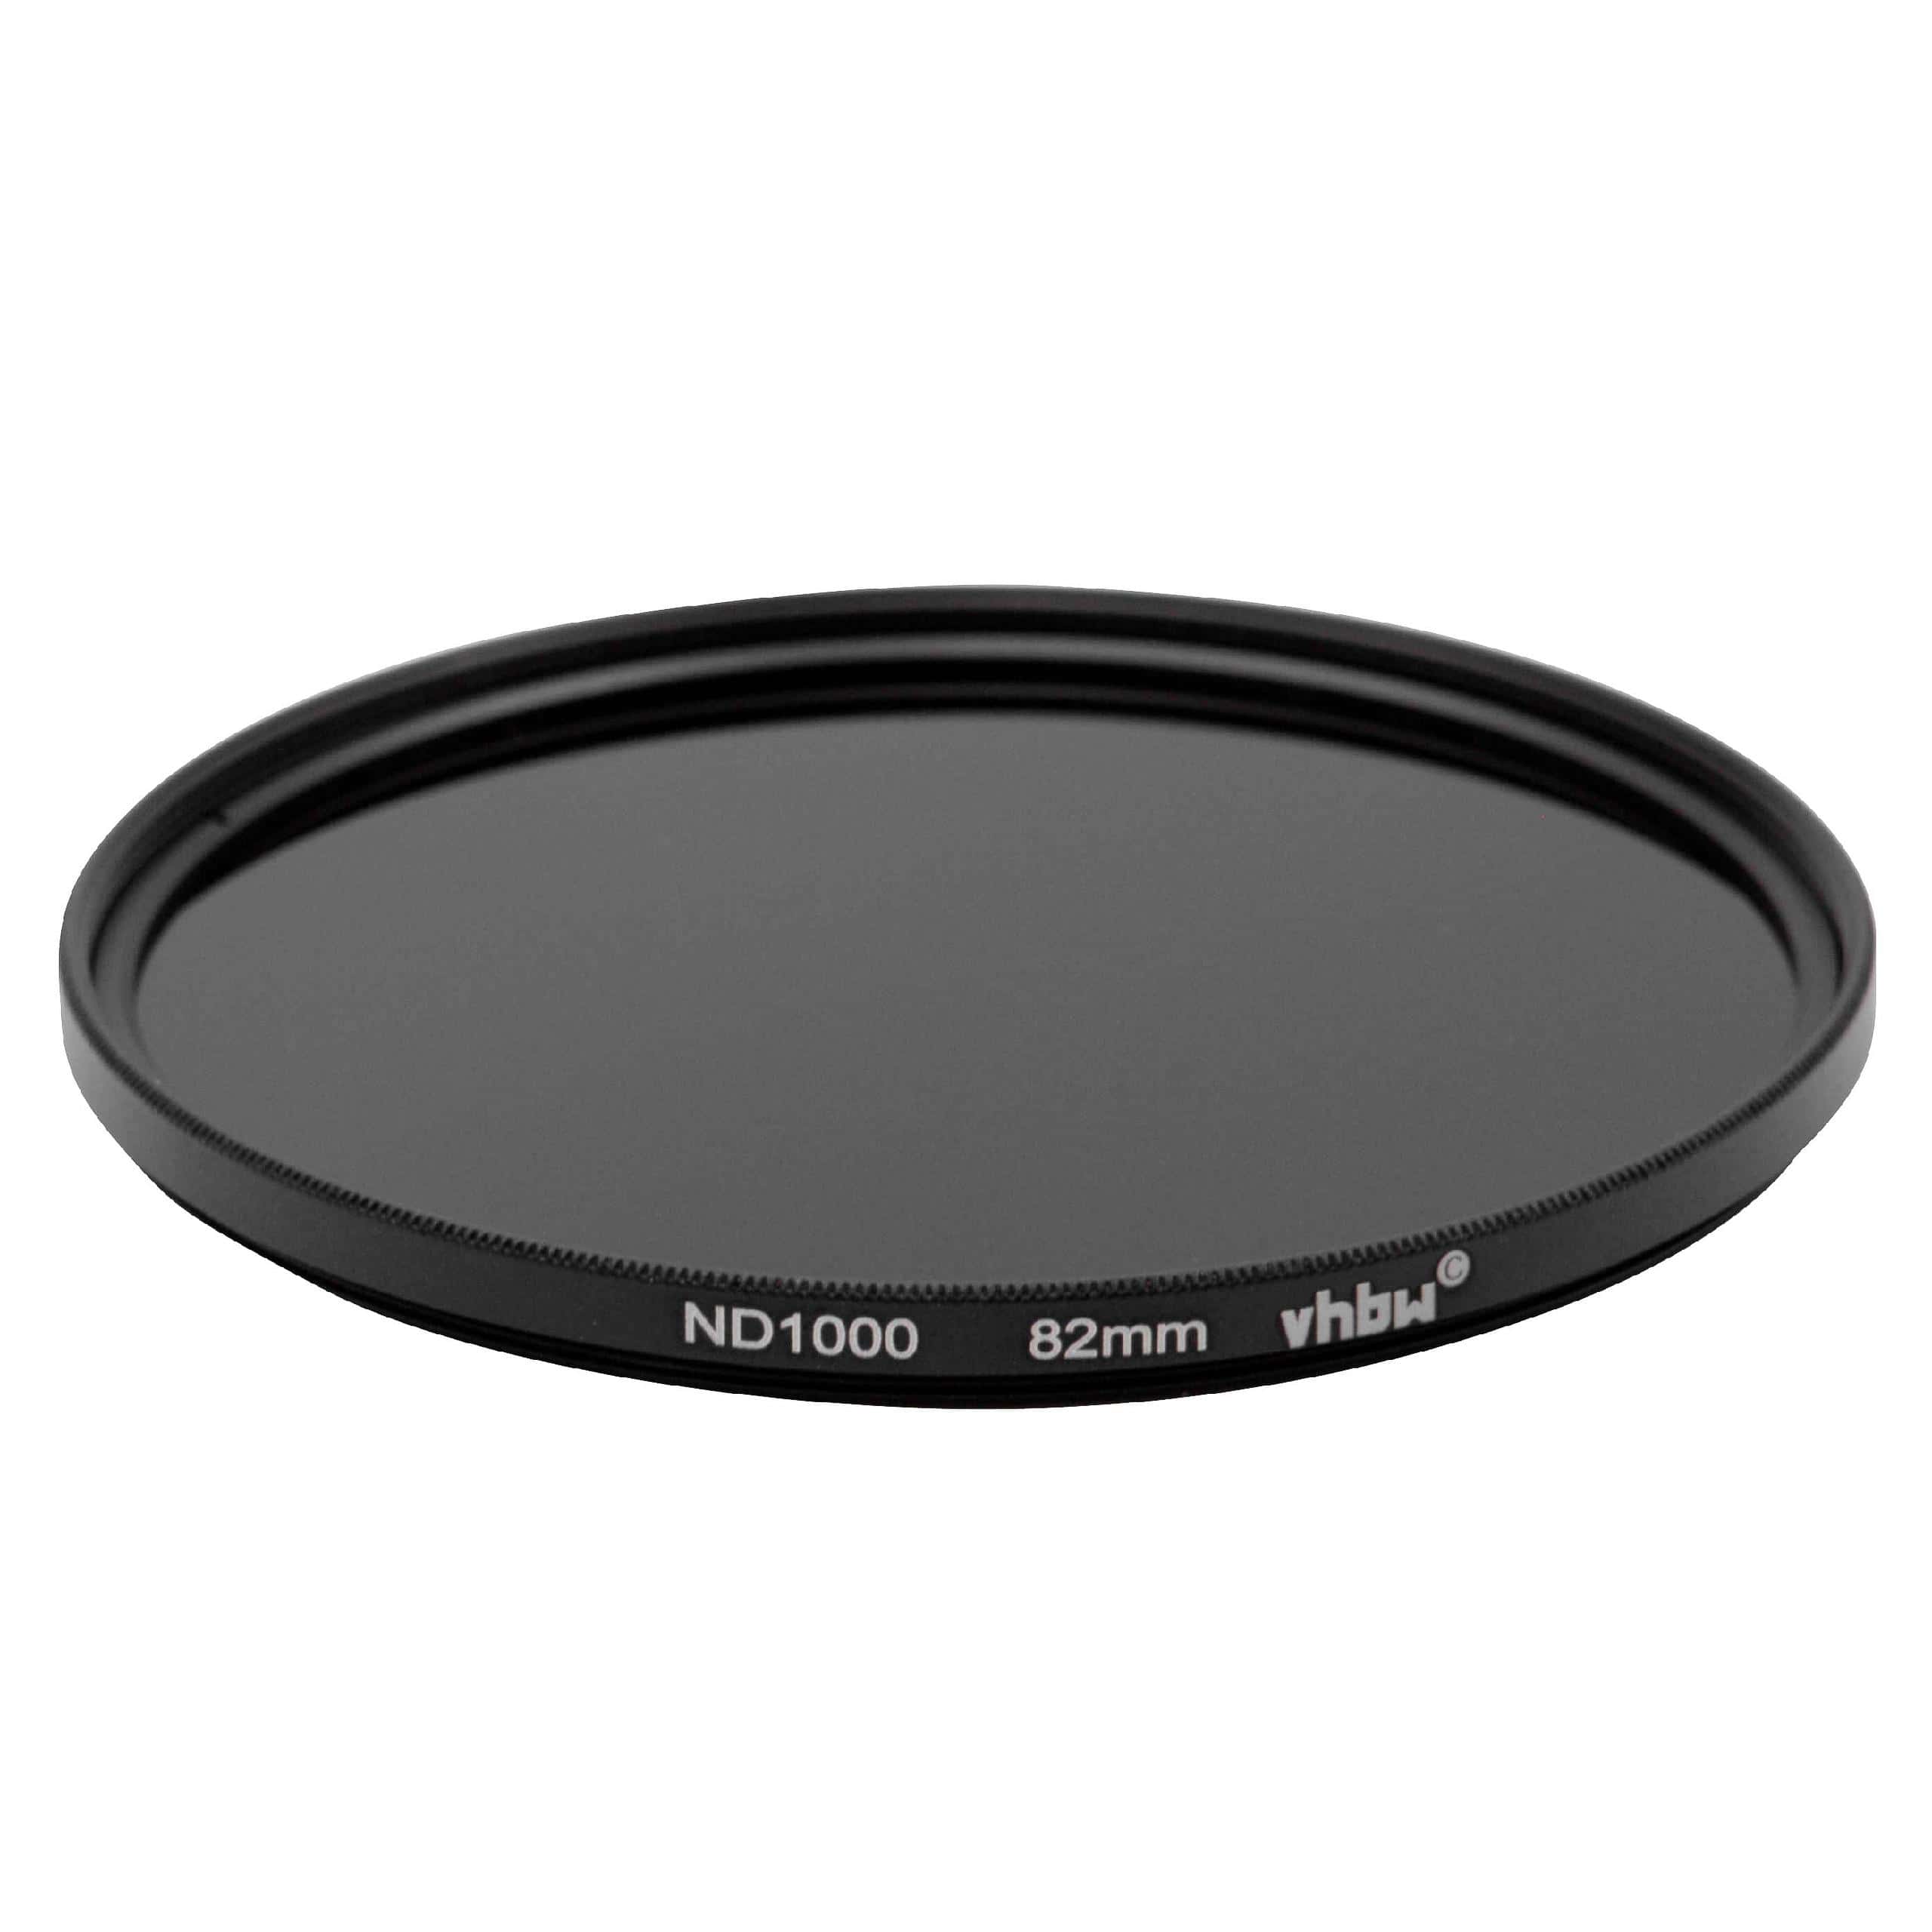 Filtre ND 1000 universel pour objectif d'appareil photo de 82 mm de diamètre – Filtre gris